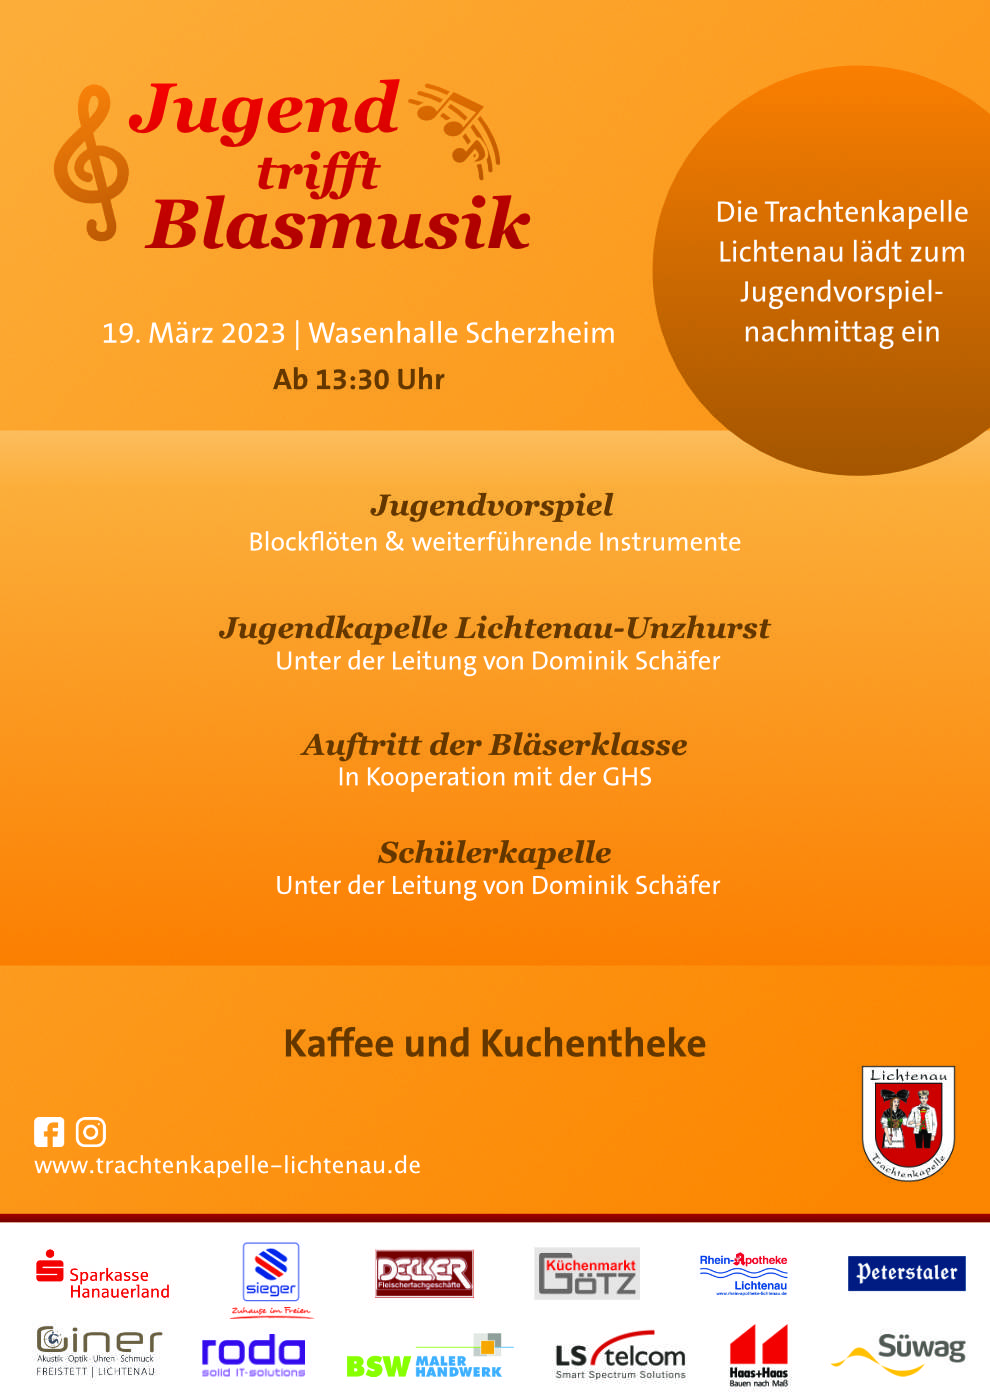 Jugend trifft Blasmusik 19.03.2023 Wasenhalle Scherzheim Jugendvorspiel Trachtenkapelle Lichtenau